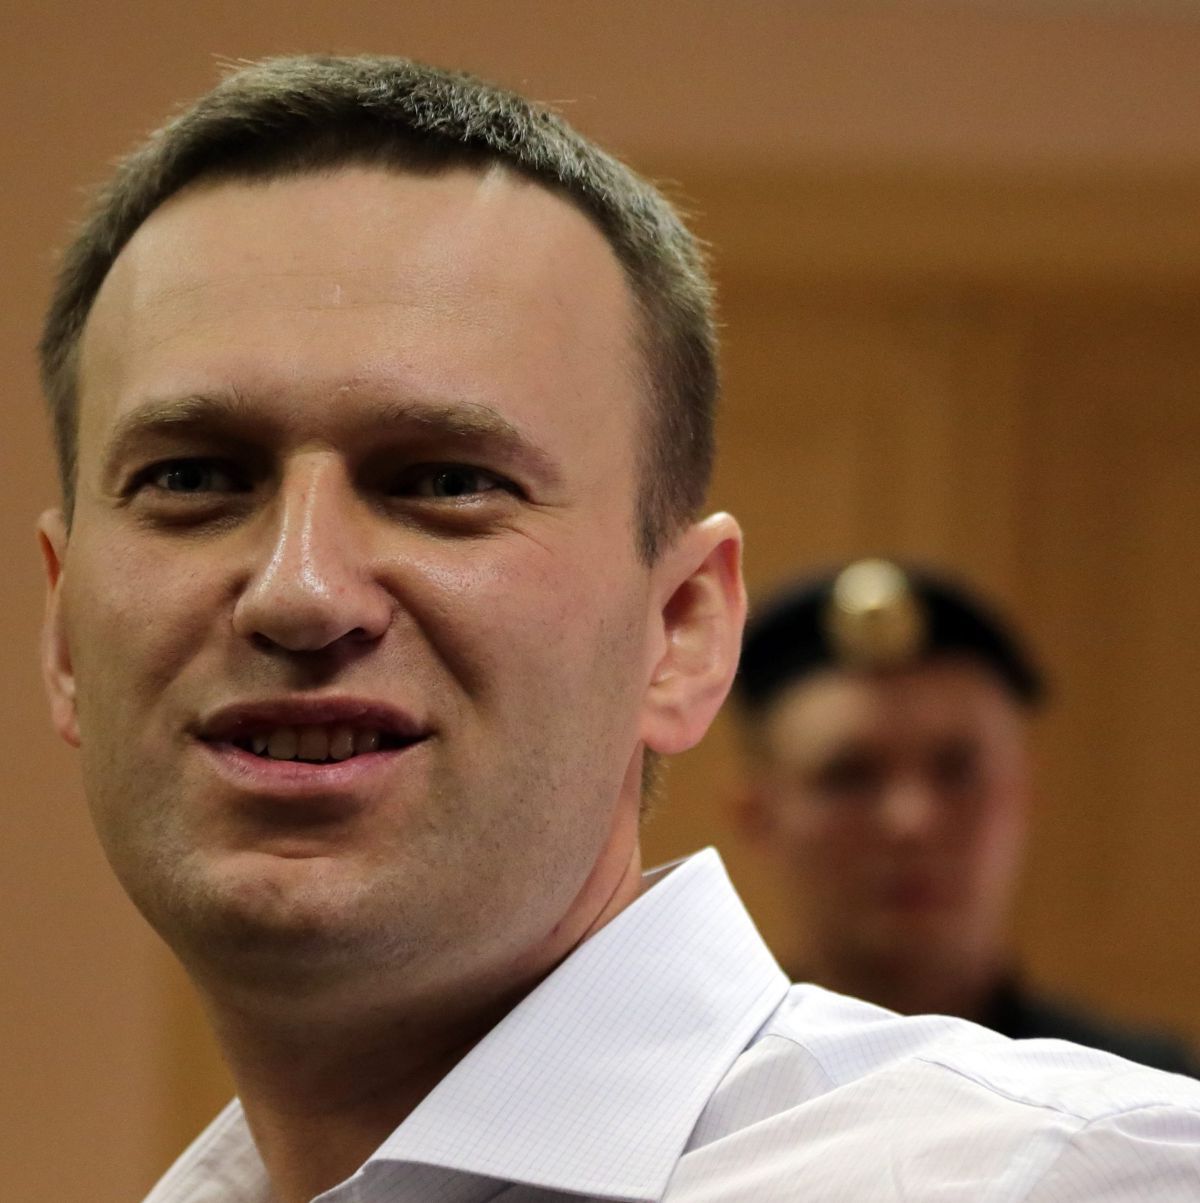 Алексей Навални заяви, че законът е нарушен - осъден е условно, ако държат под домашен арест